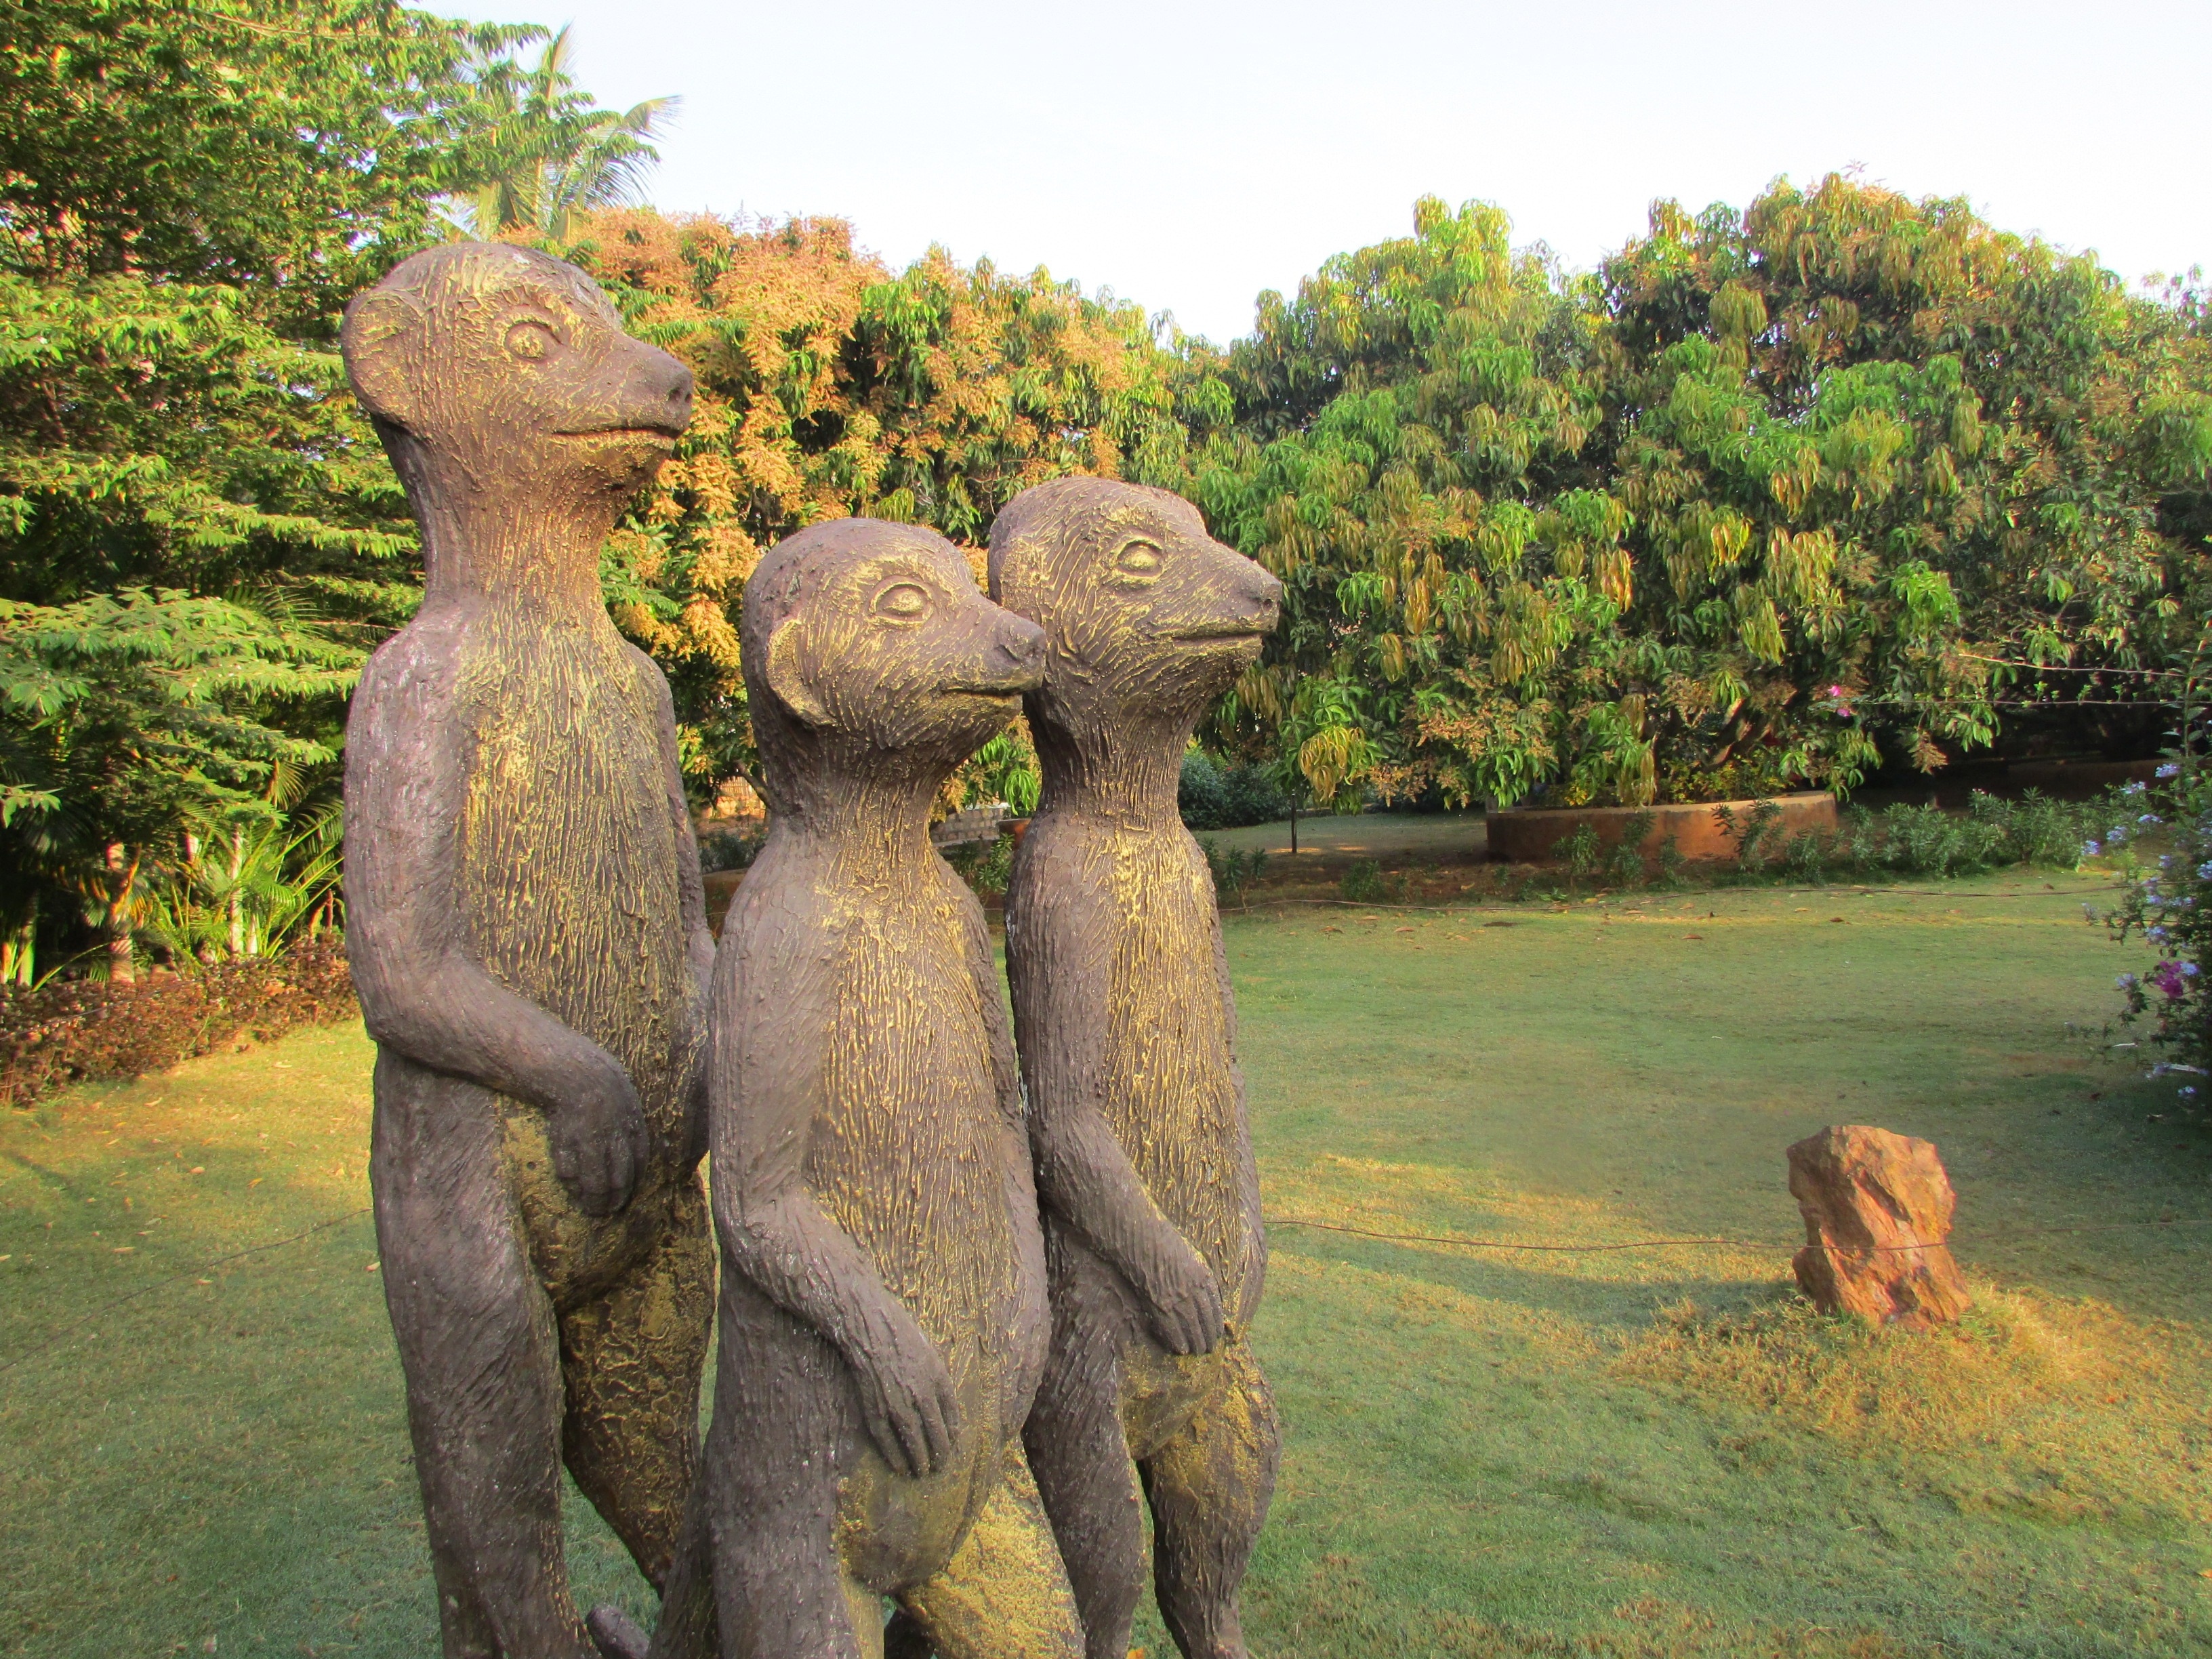 3 primate statues